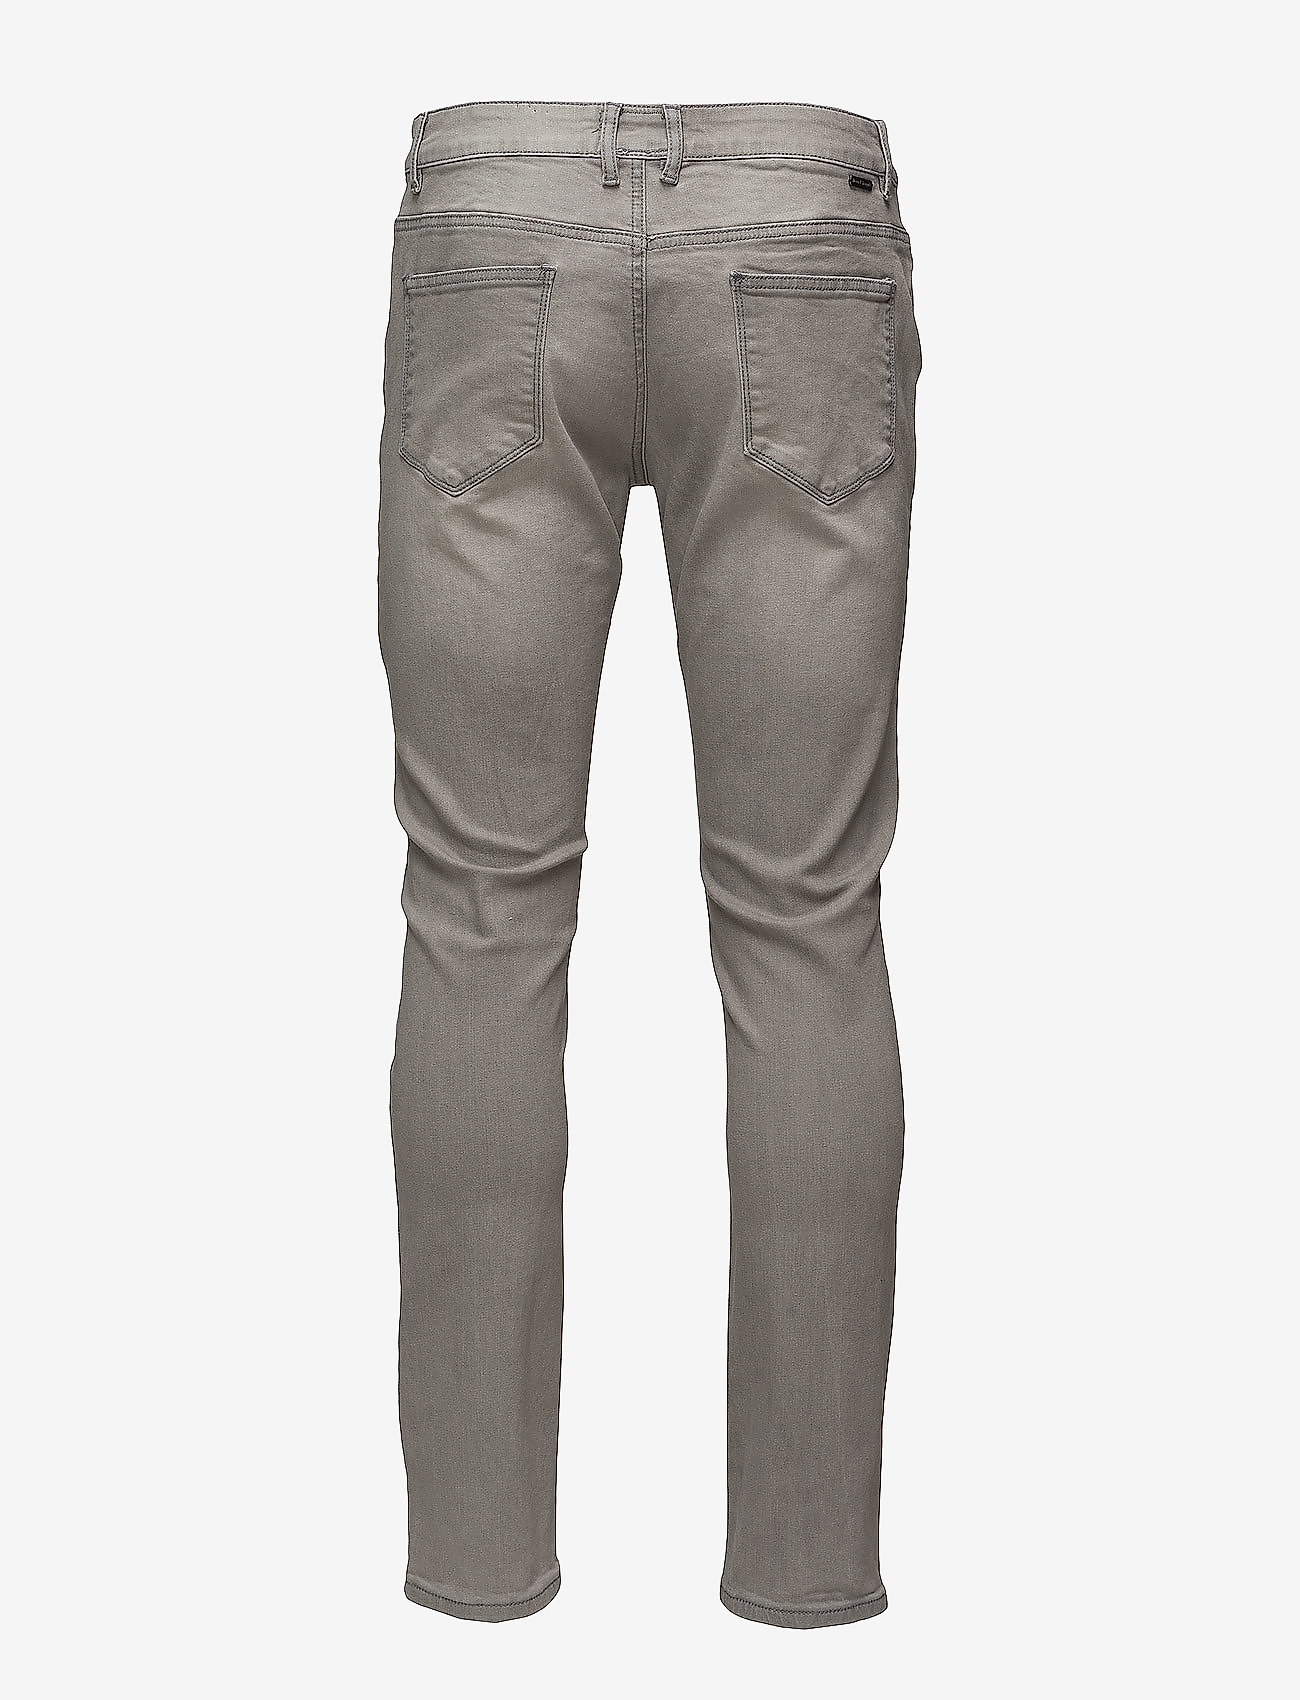 Bruun & Stengade - Neal - slim fit jeans - grey - 1